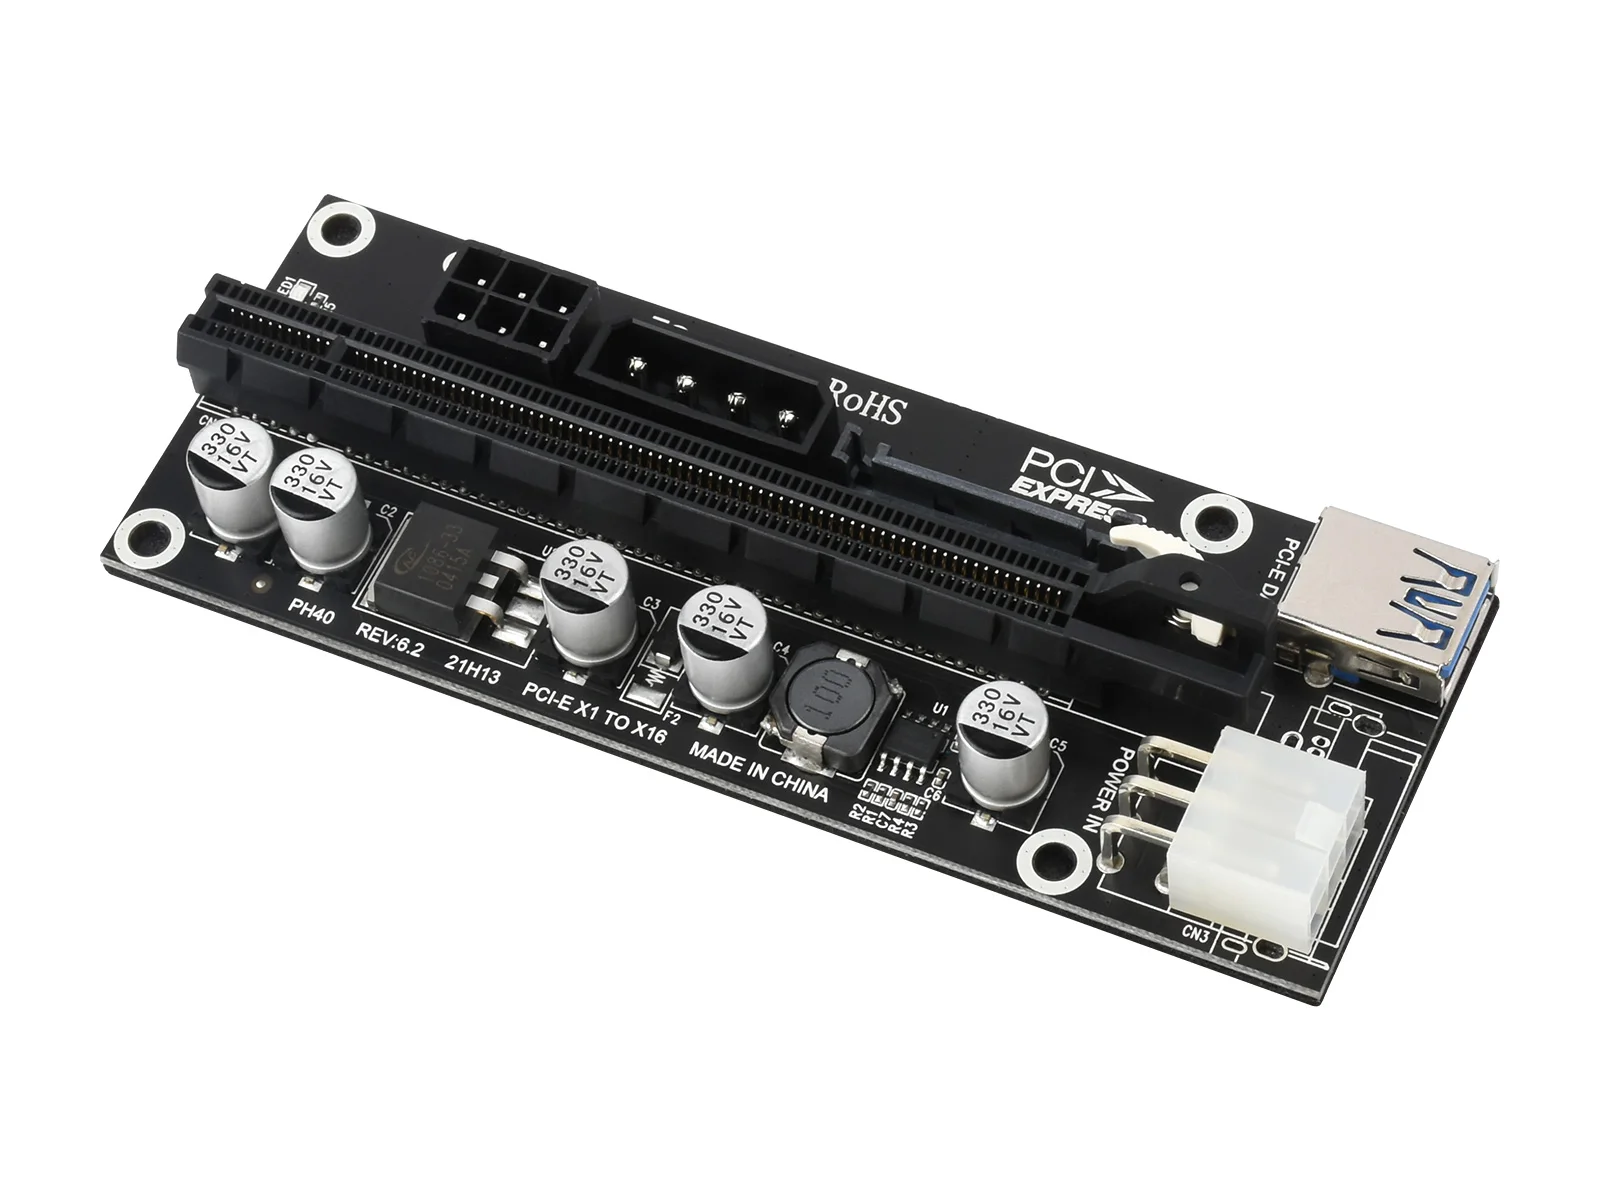 

Расширитель PCIe X1 на PCIe X16, используемый с M.2 для PCIe 4-Ch расширитель